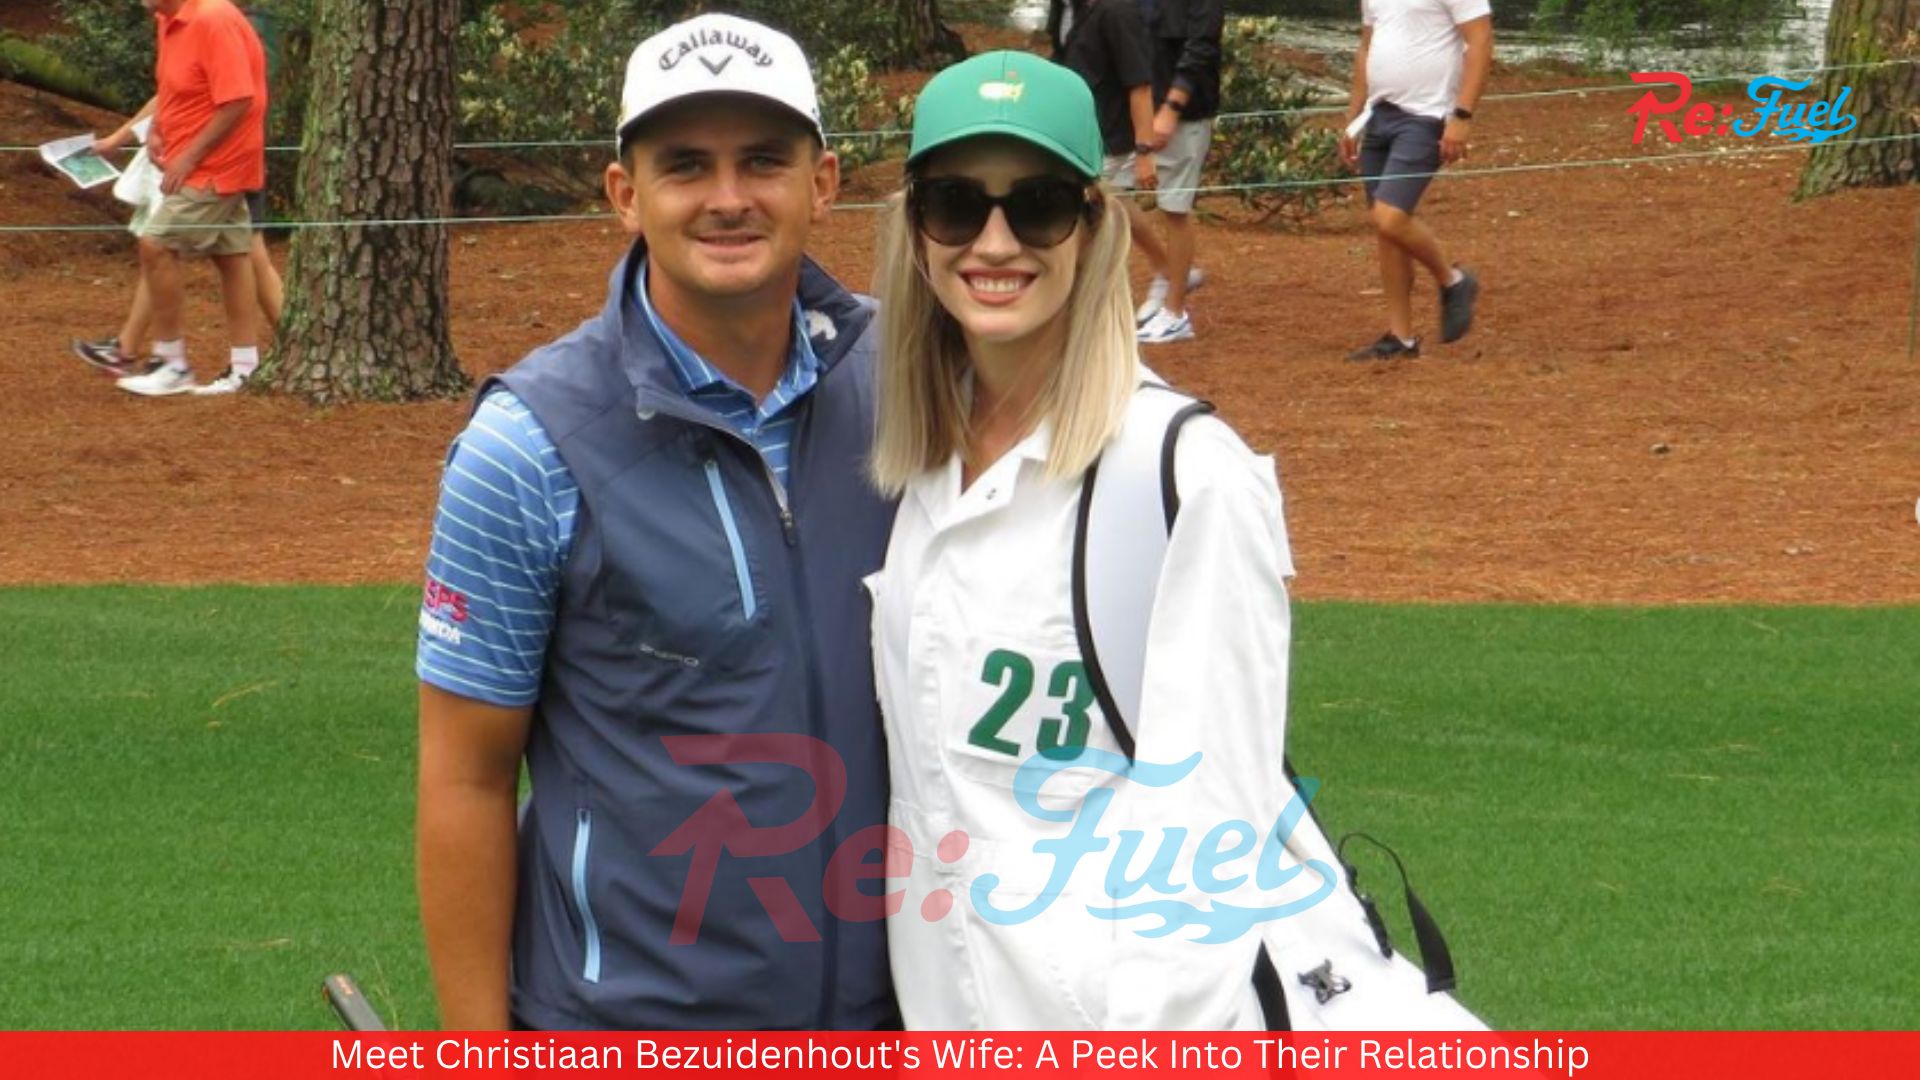 Meet Christiaan Bezuidenhout's Wife: A Peek Into Their Relationship